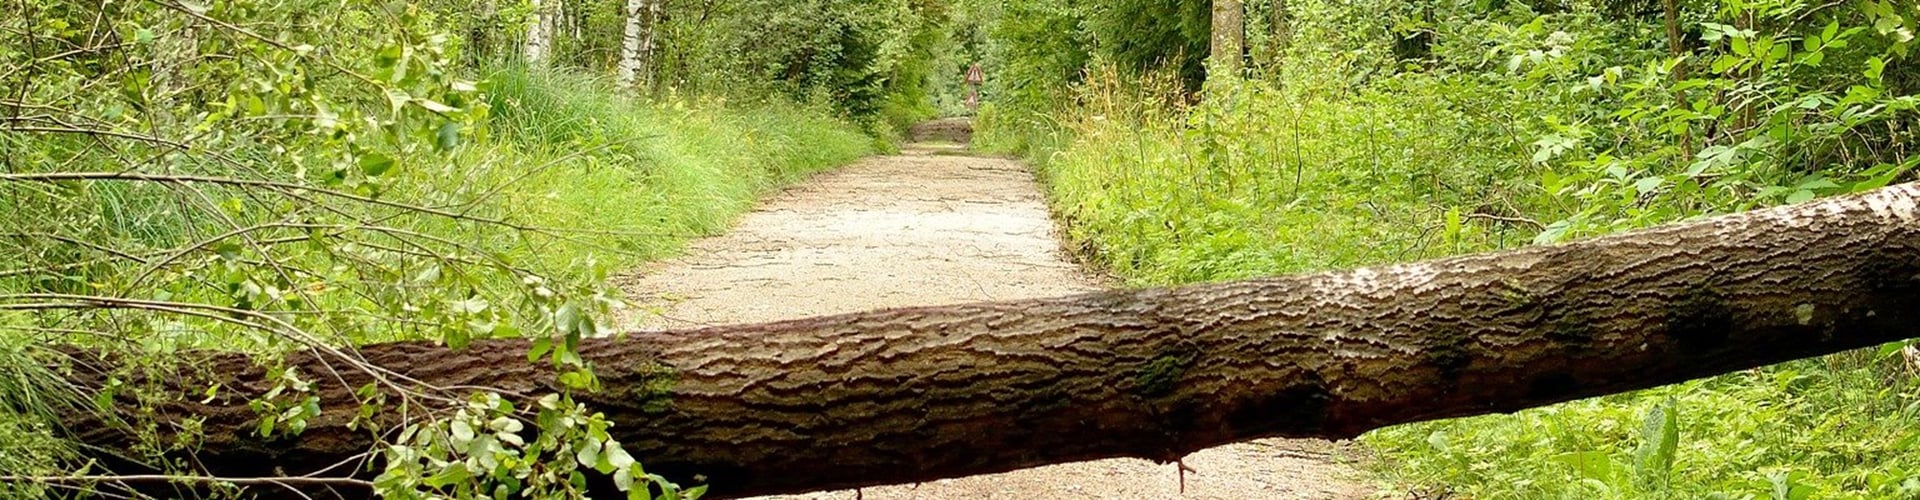 Væltet træ på vejen i skoven